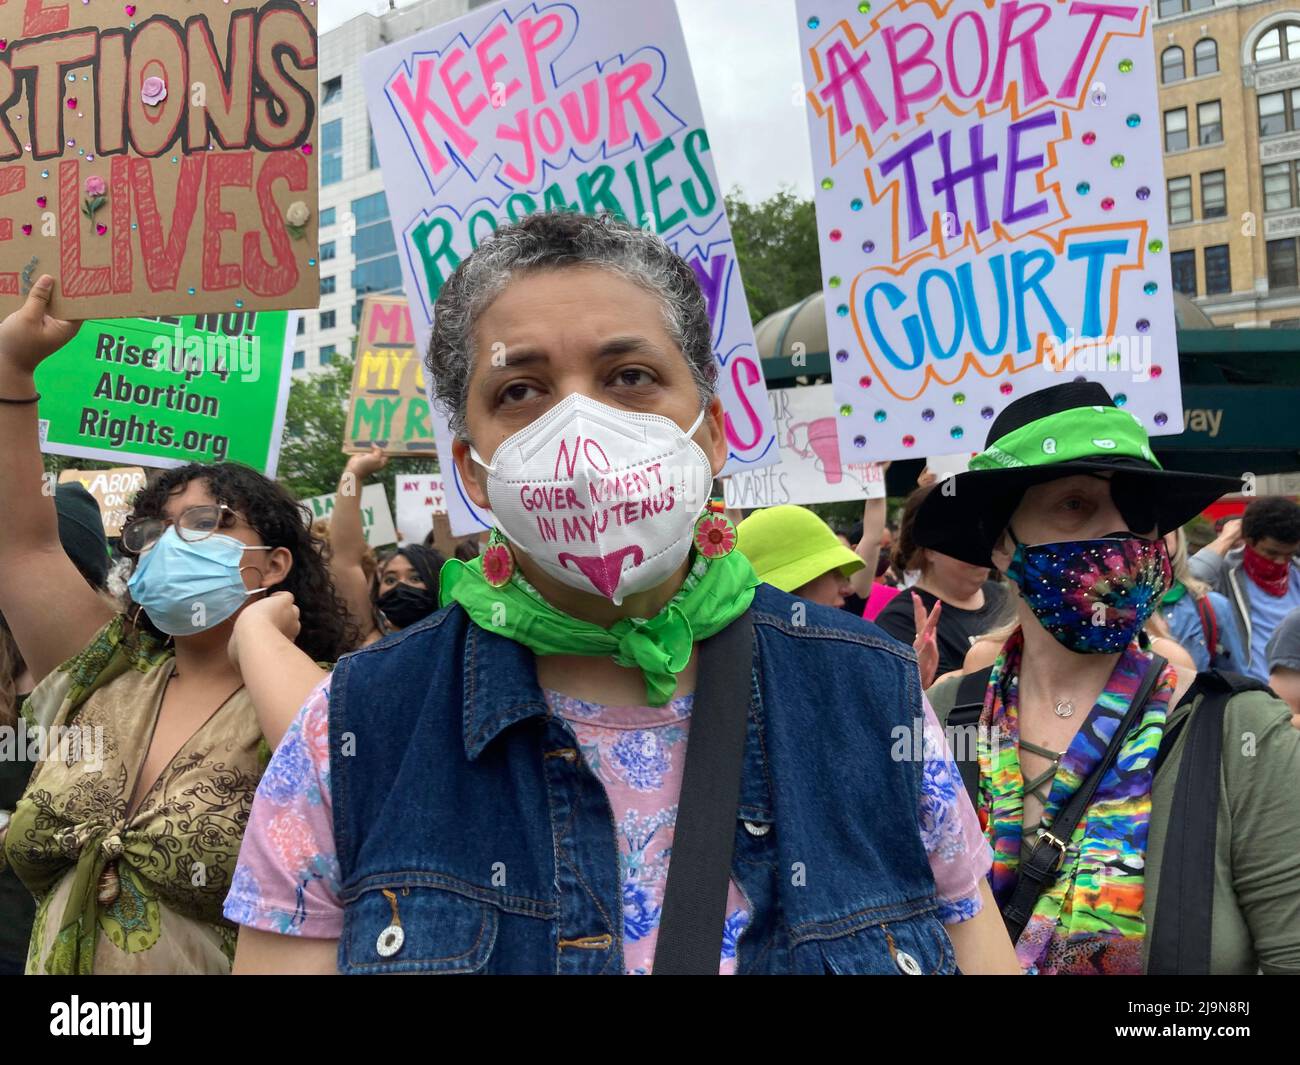 Am Samstag, den 14. Mai 2022, versammelten sich Hunderte für Abtreibungsrechte im Union Square Park in New York, bevor sie zum Foley Square marschierten und sich den Tausenden anschließen, die sich dort versammelten. Die Pro-Choice-Demonstranten versammelten sich in den USA gegen die erwartete Wende von Roe gegen Wade. (© Frances M. Roberts) Stockfoto